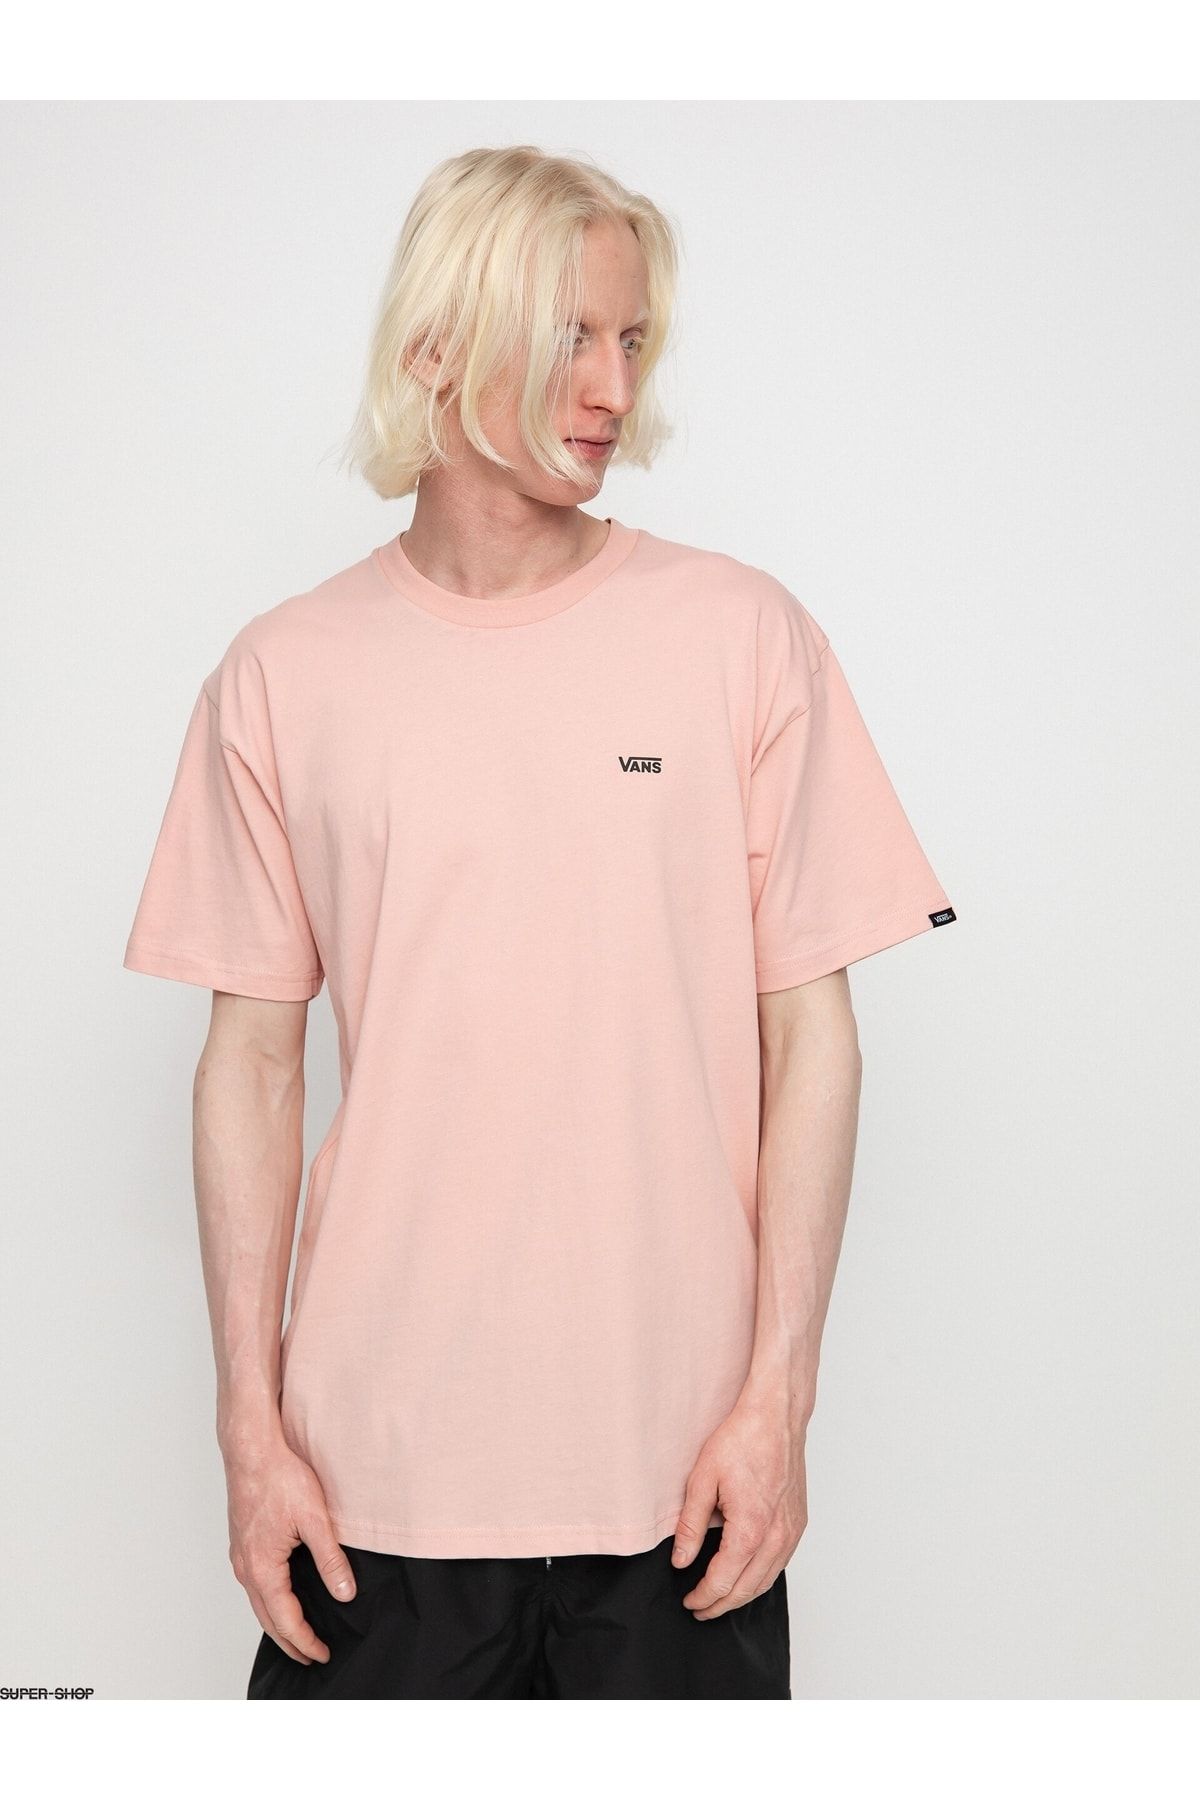 تی شرت صورتی یقه خدمه طرح چاپی مدل قواره دار آستین کوتاه مردانه ونس Vans (برند آمریکا)